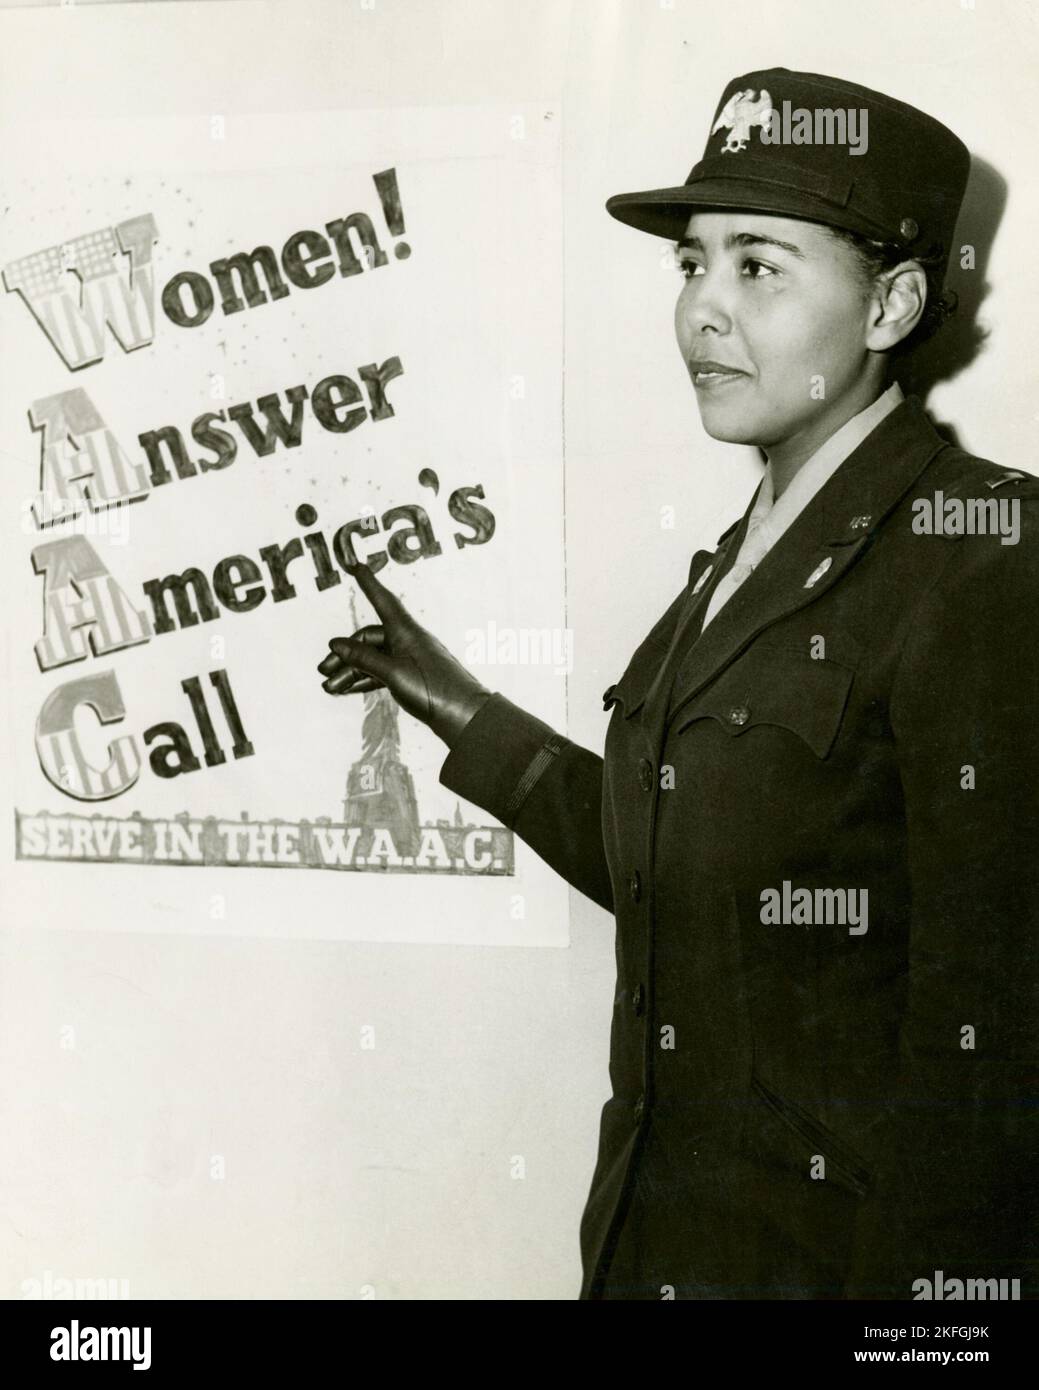 African American Charity Adams, primo ufficiale nel corpo ausiliario dell'esercito delle donne, in piedi in uniforme e indicando un poster che recita: "Donne! Rispondi a chiamata America, servi nel W.A.A.C.", 1943-02. Foto Stock